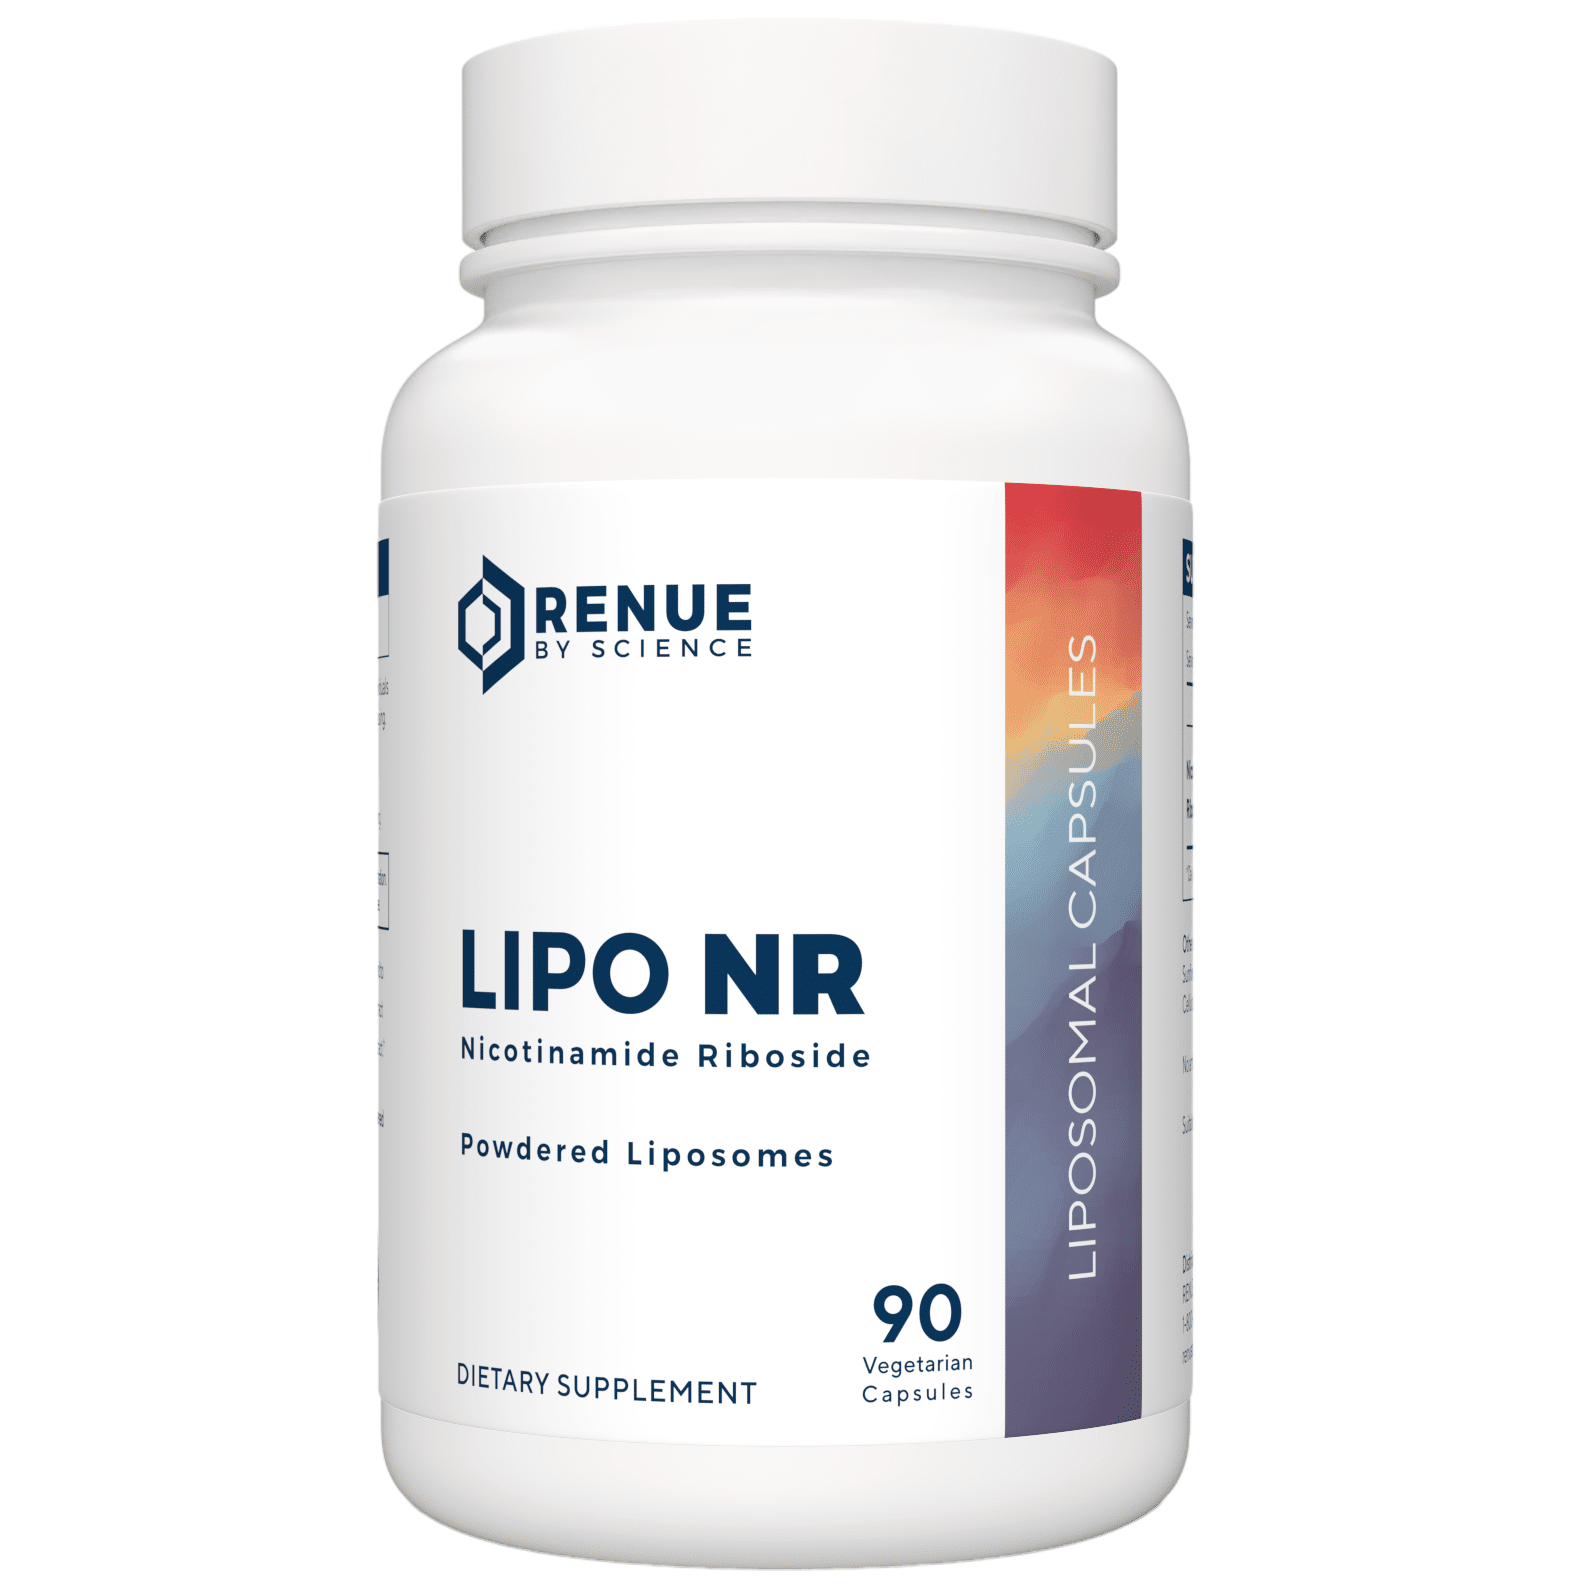 RENUE BY SCIENCE LIPO NR – Powdered Liposomes